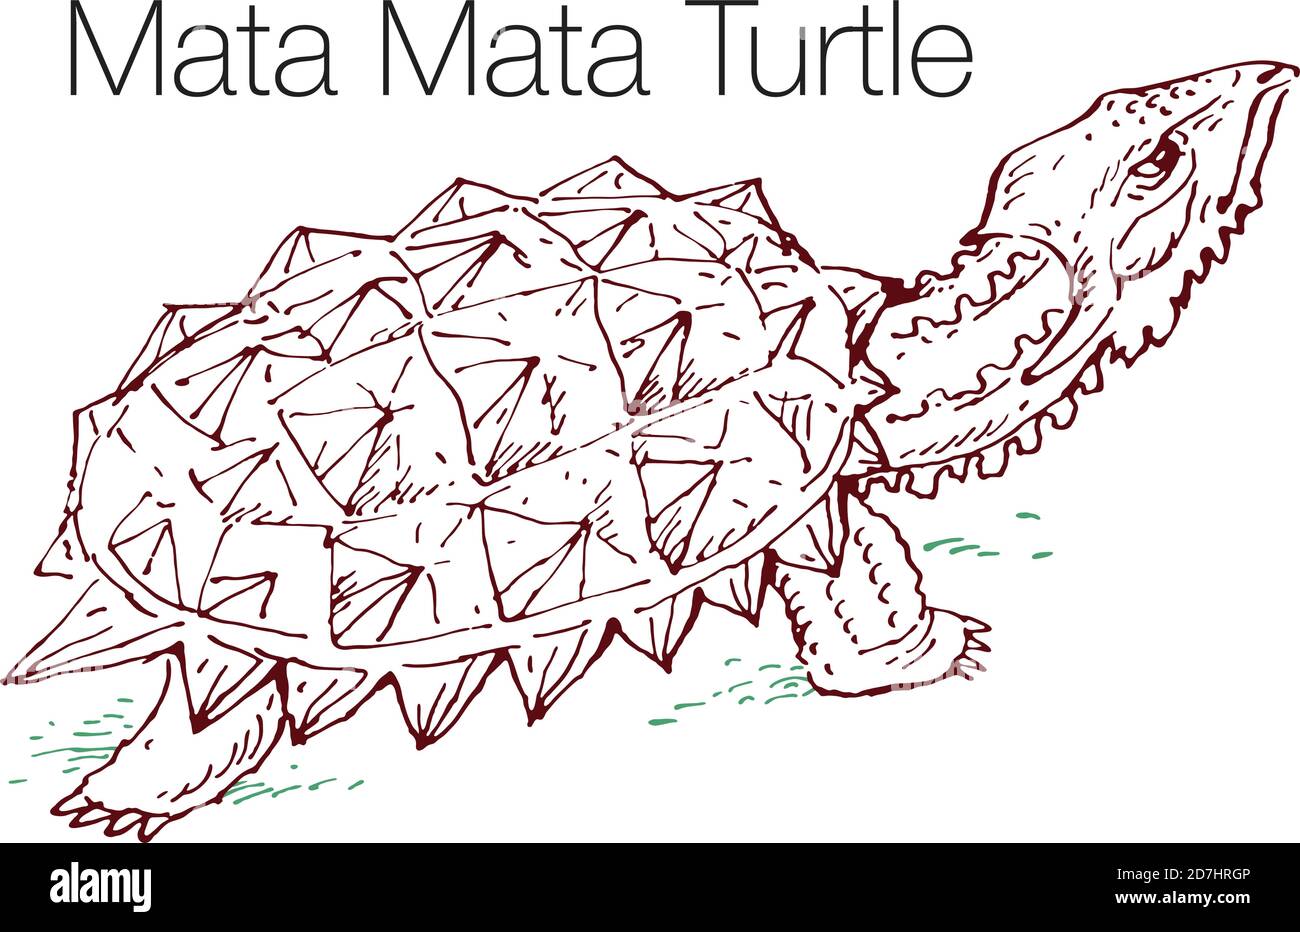 Illustrazione vettoriale disegnata a mano della tartaruga Mata Mata Illustrazione Vettoriale